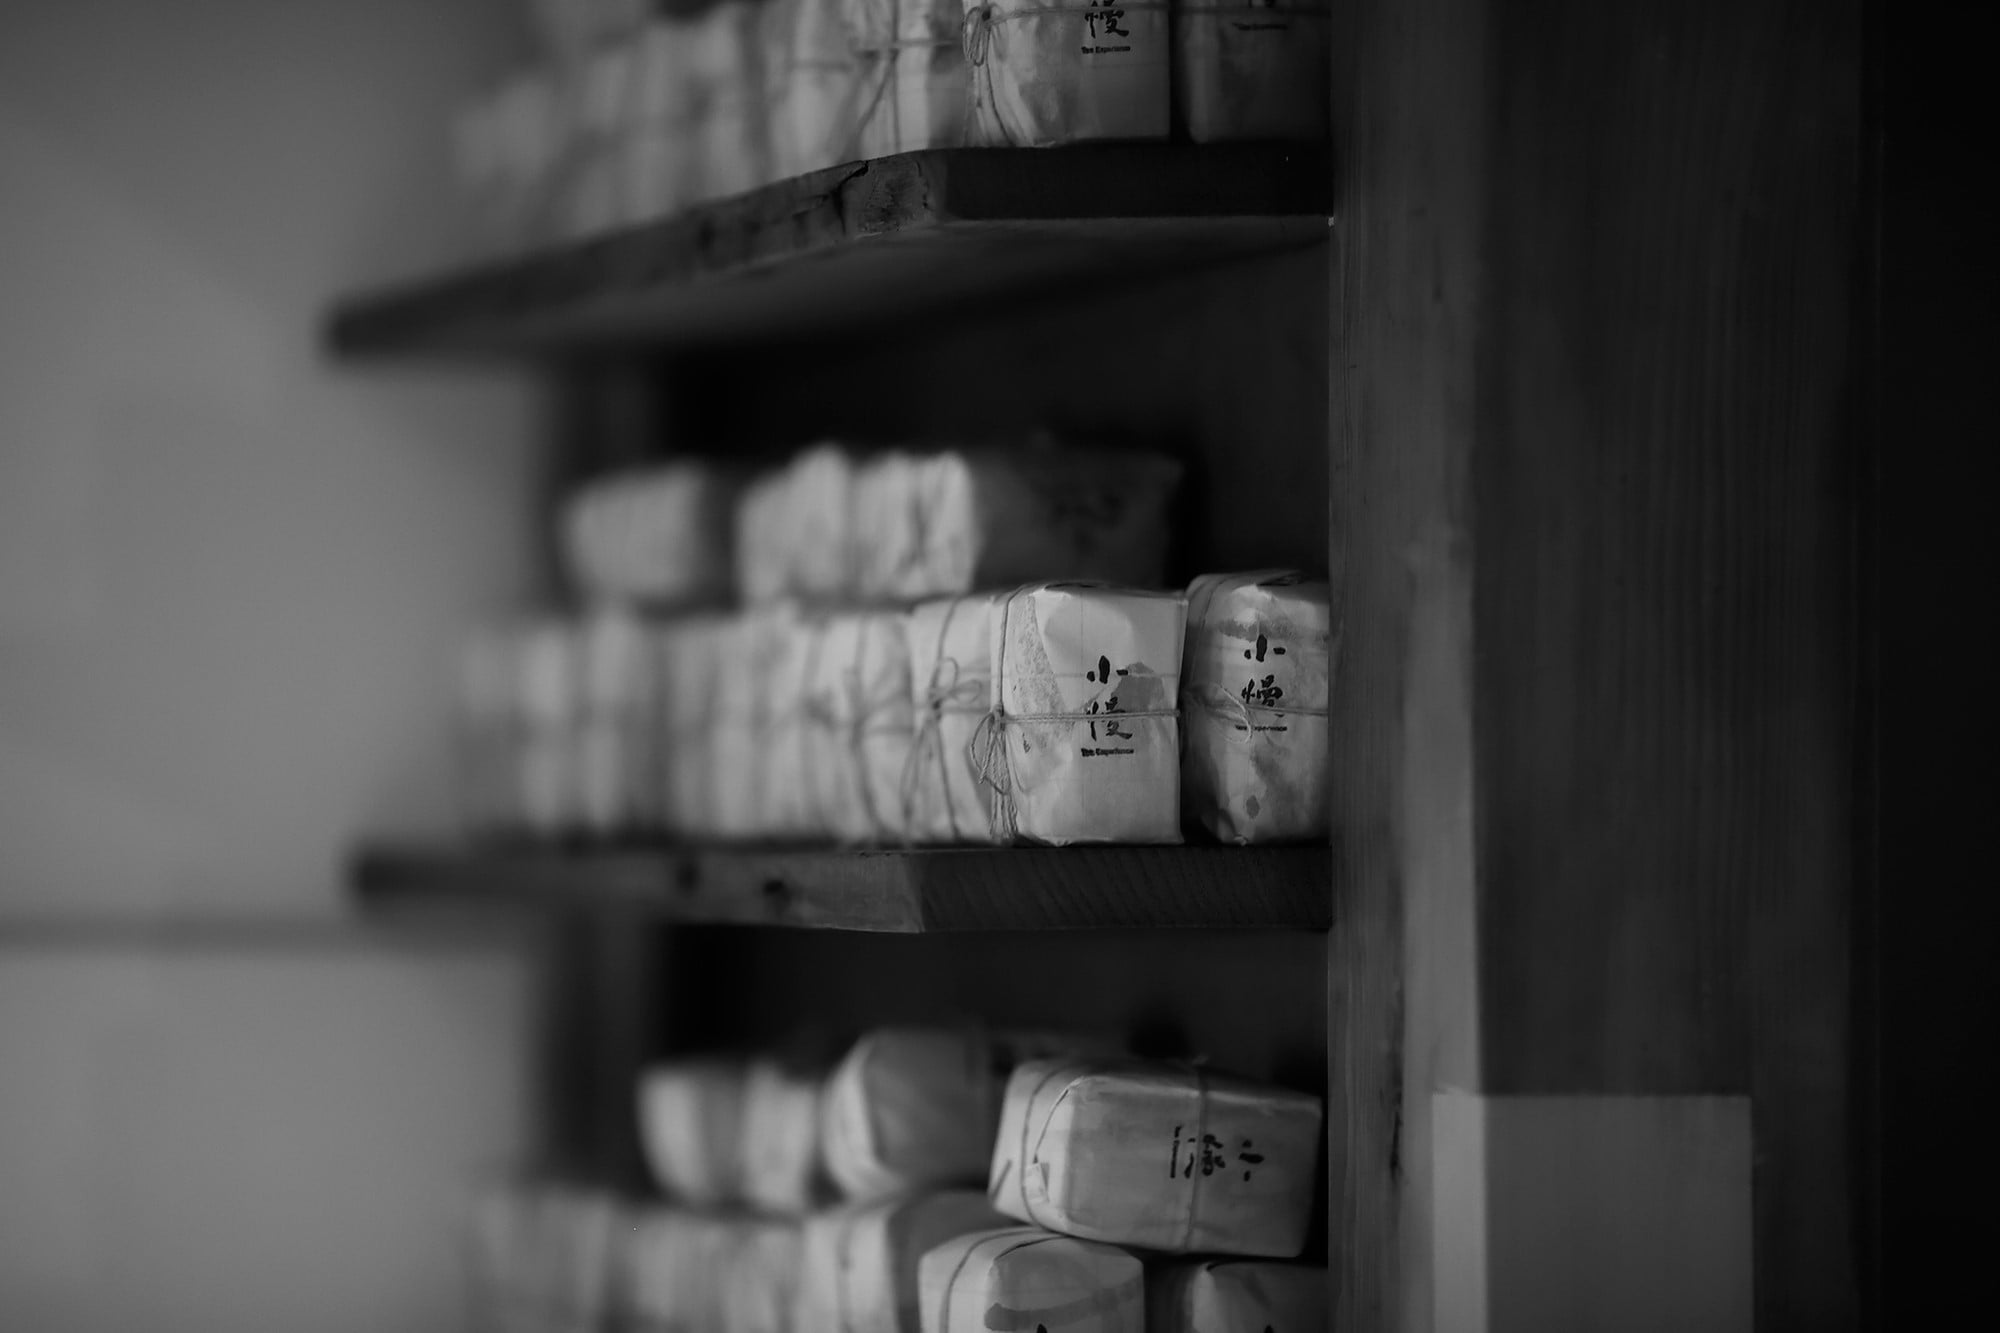 京都小慢１階には台北で購入できるのと同じ茶葉が並ぶ。「日本では自然栽培の野放茶に興味を持つ人が多いですね」。